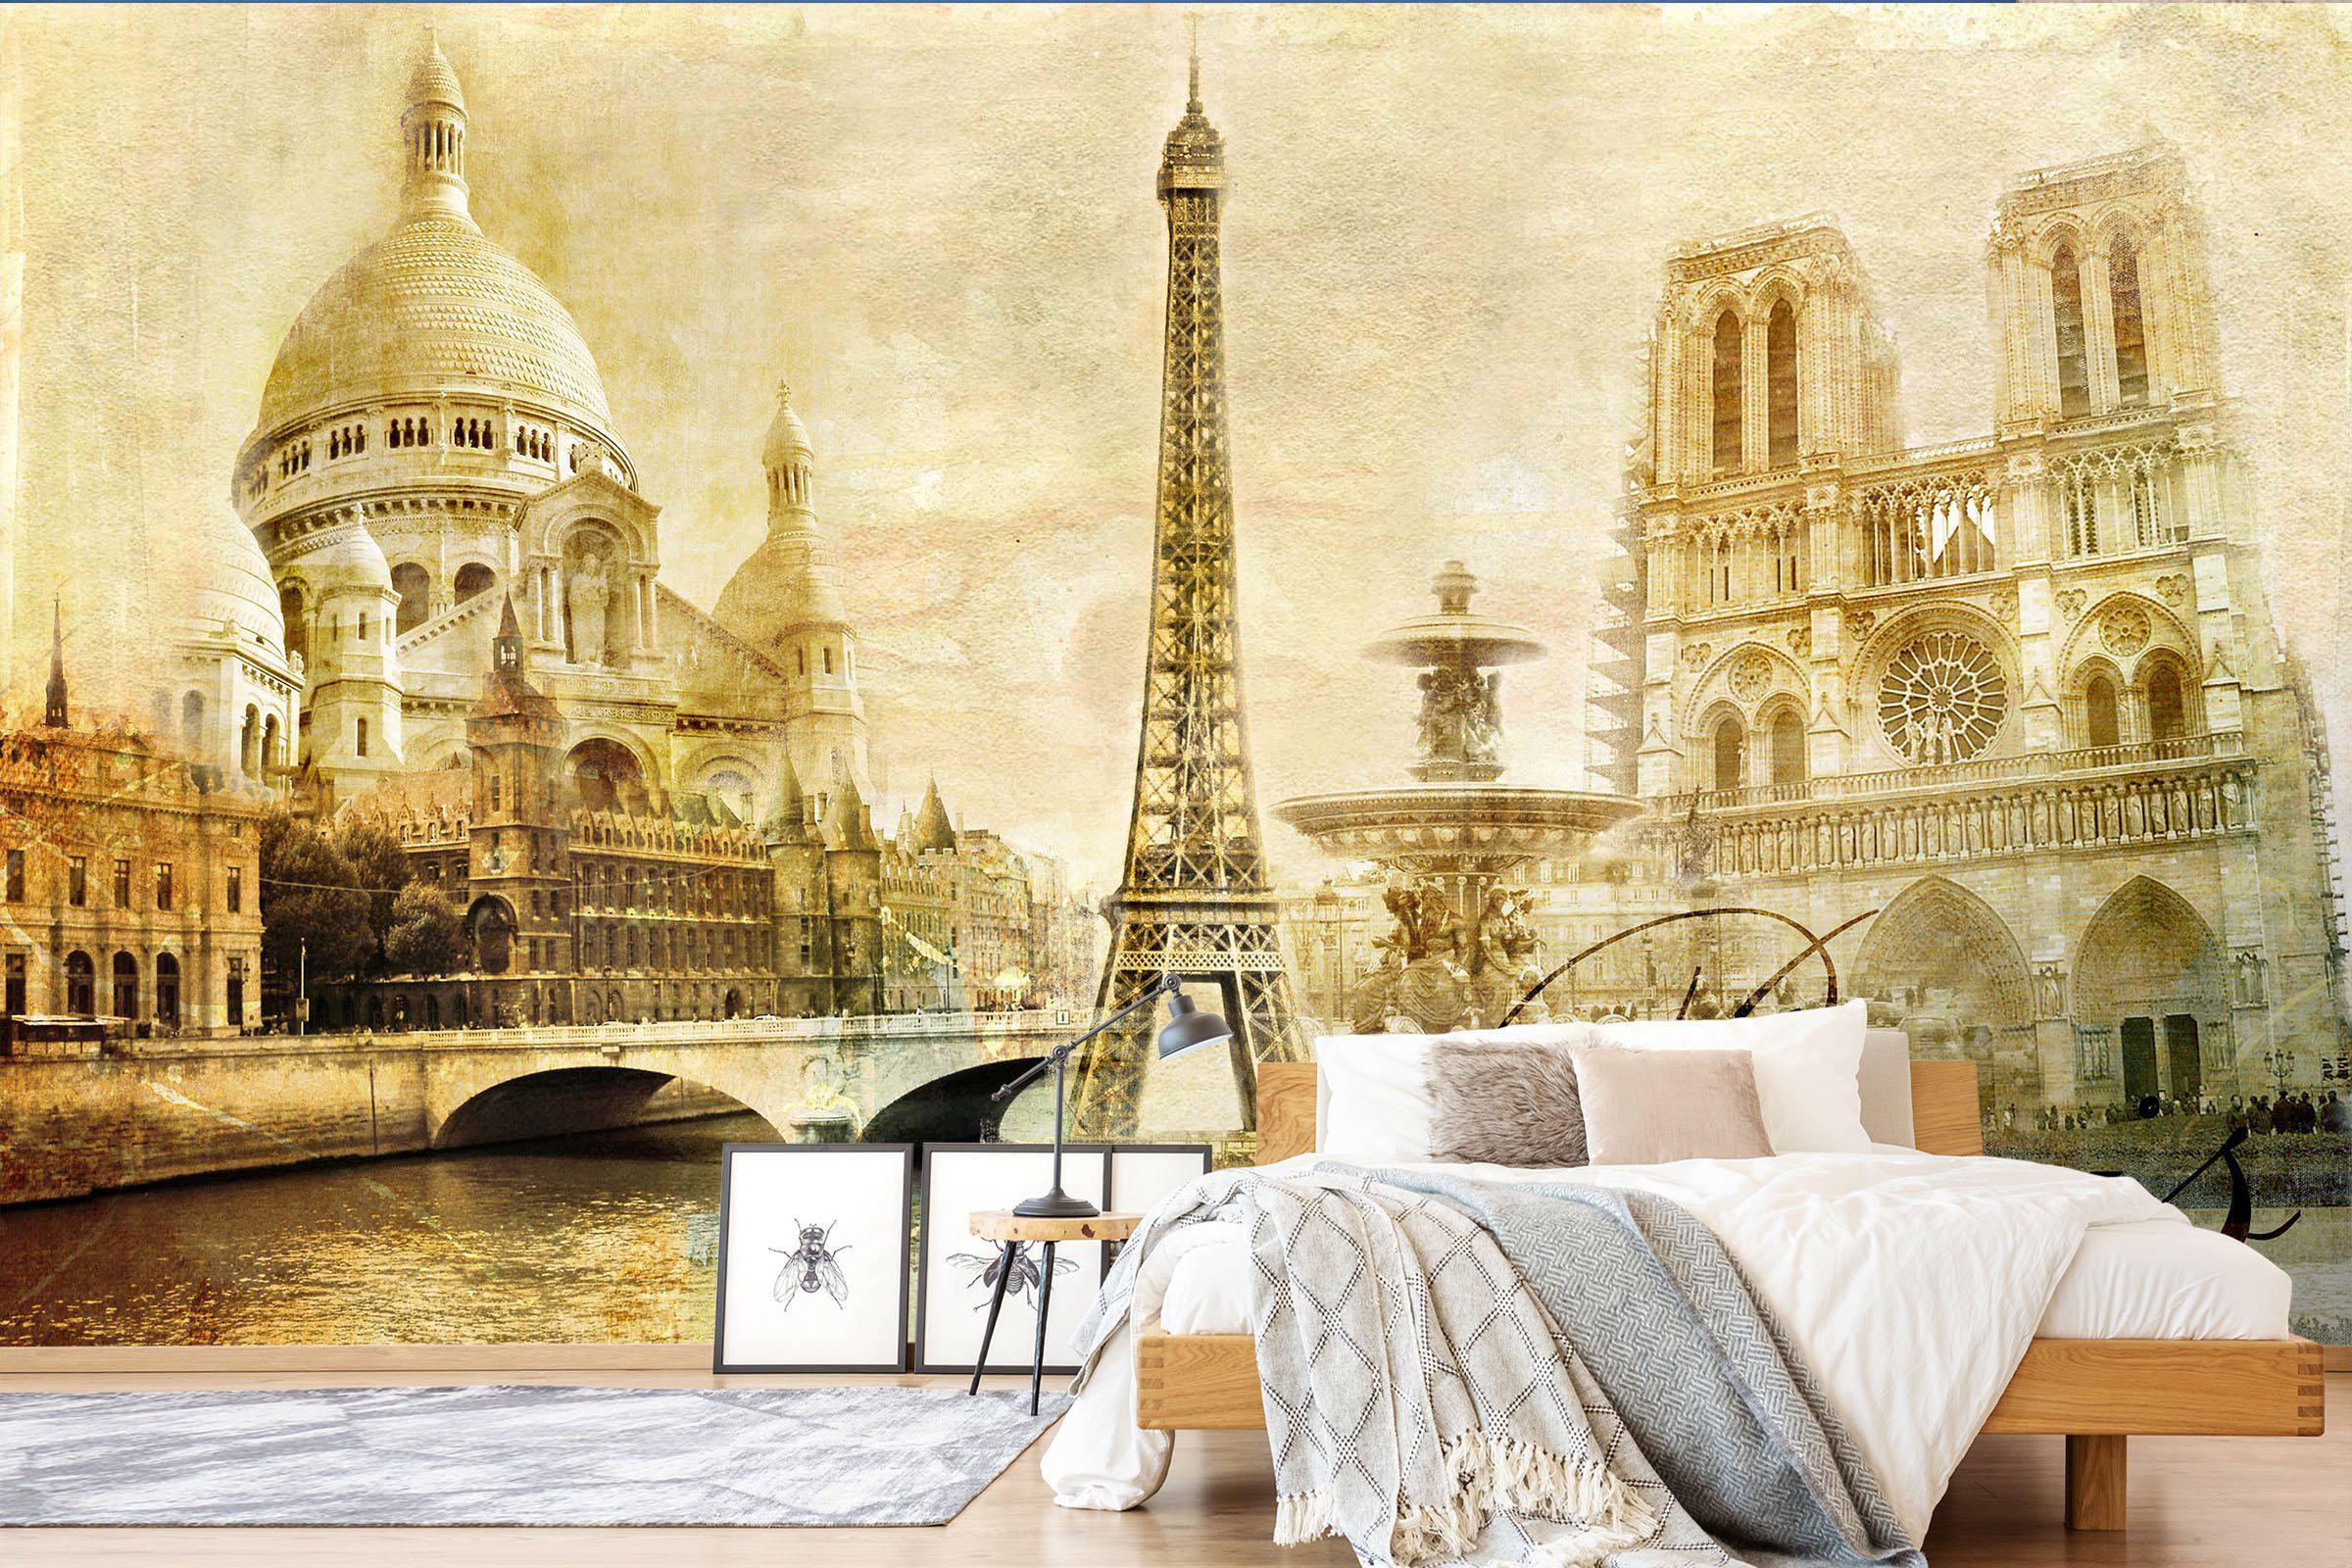 3D Home Wallpaper Yellow Retro Paris Tower 054 ACH Wall Murals Self-adhesive Vinyl, XL 208cm x 146cm (WxH)(82''x58'')